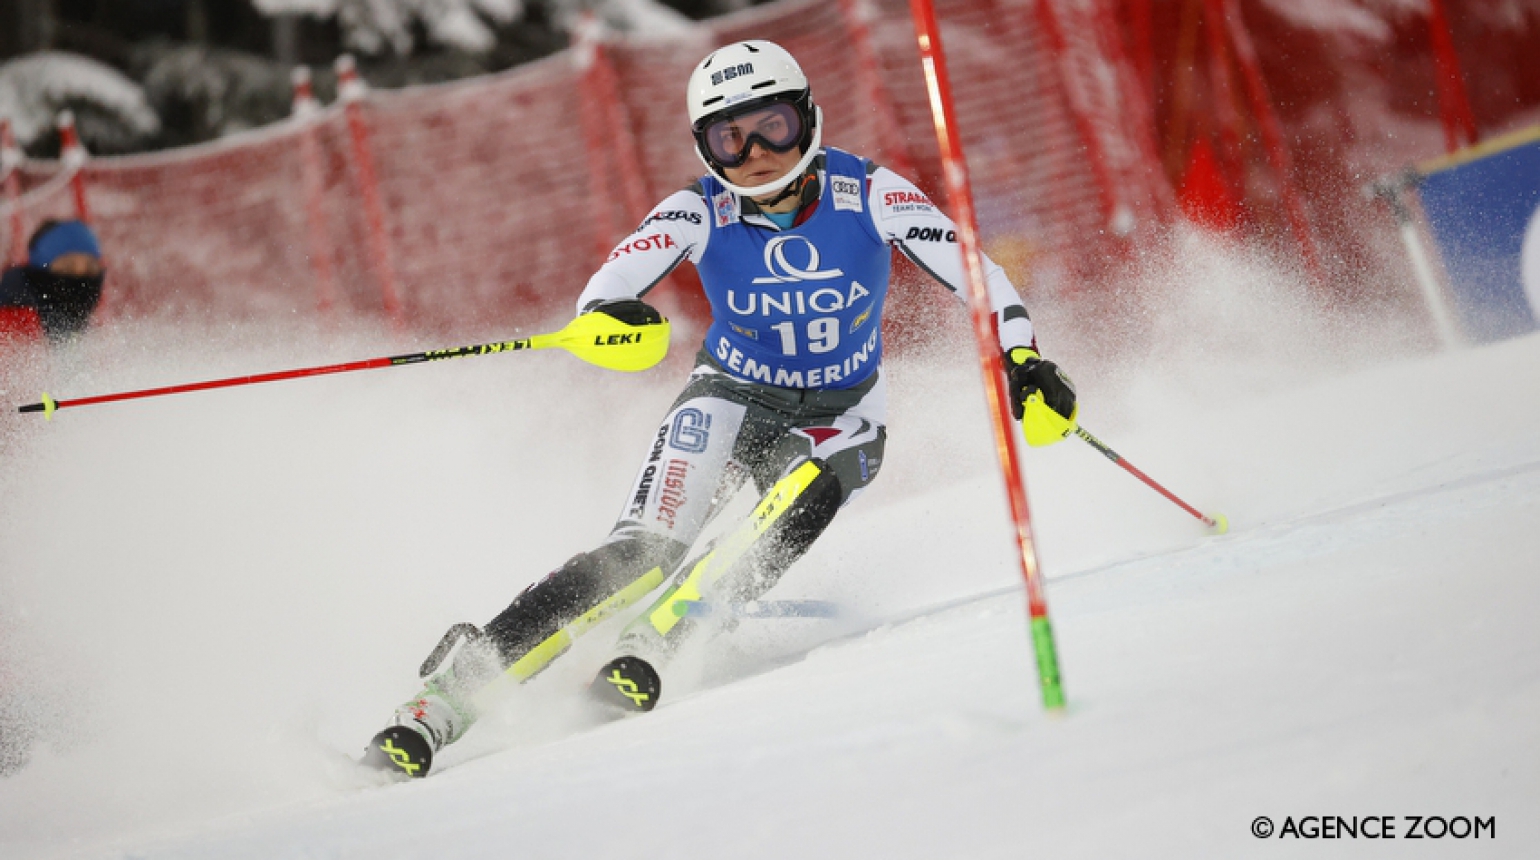 Výborná Dubovská ve slalomu SP v Zagrebu i s bolavými zády sedmnáctá!